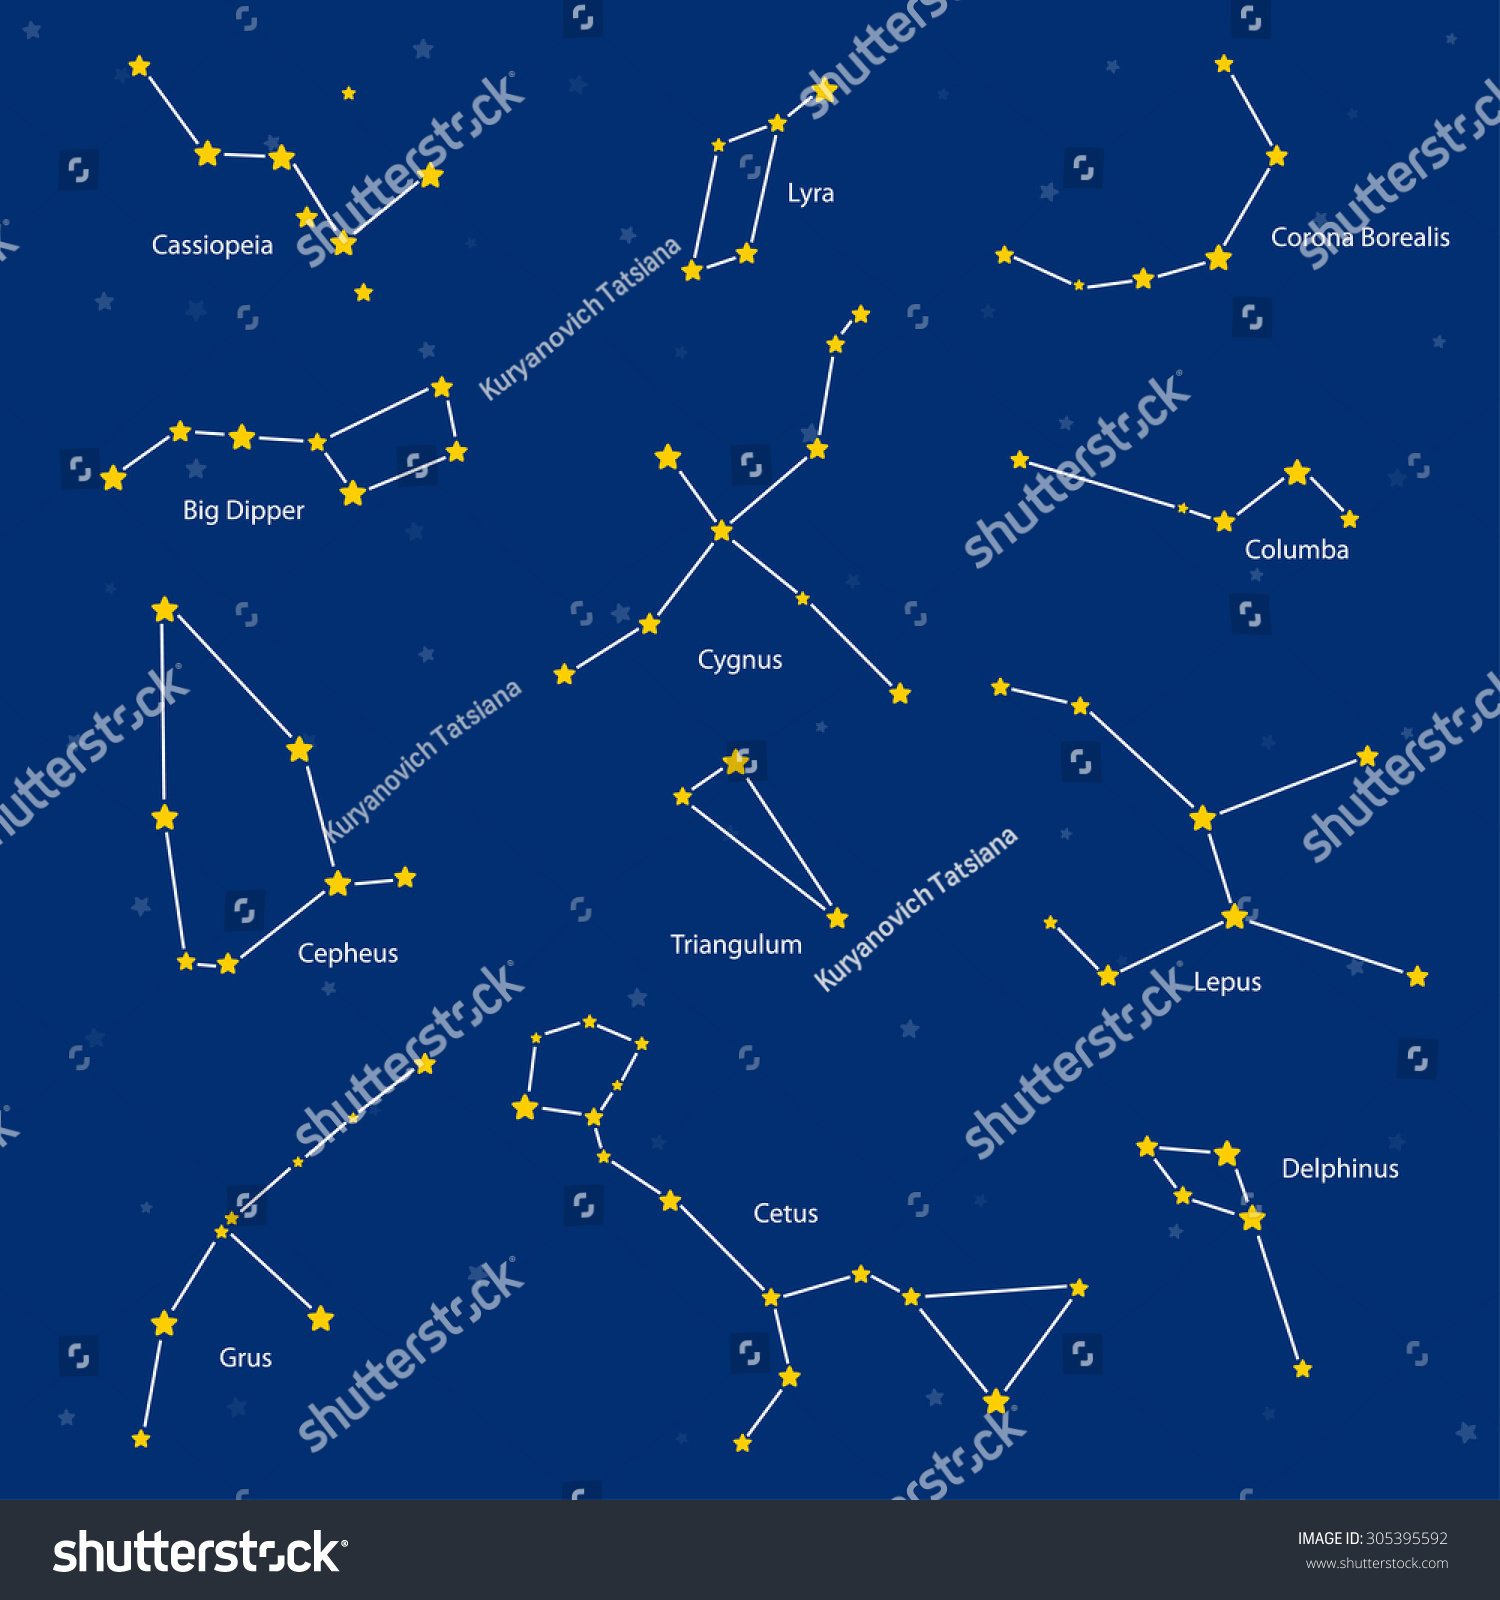 Созвездие Кассиопея на карте звездного неба относительно ковша